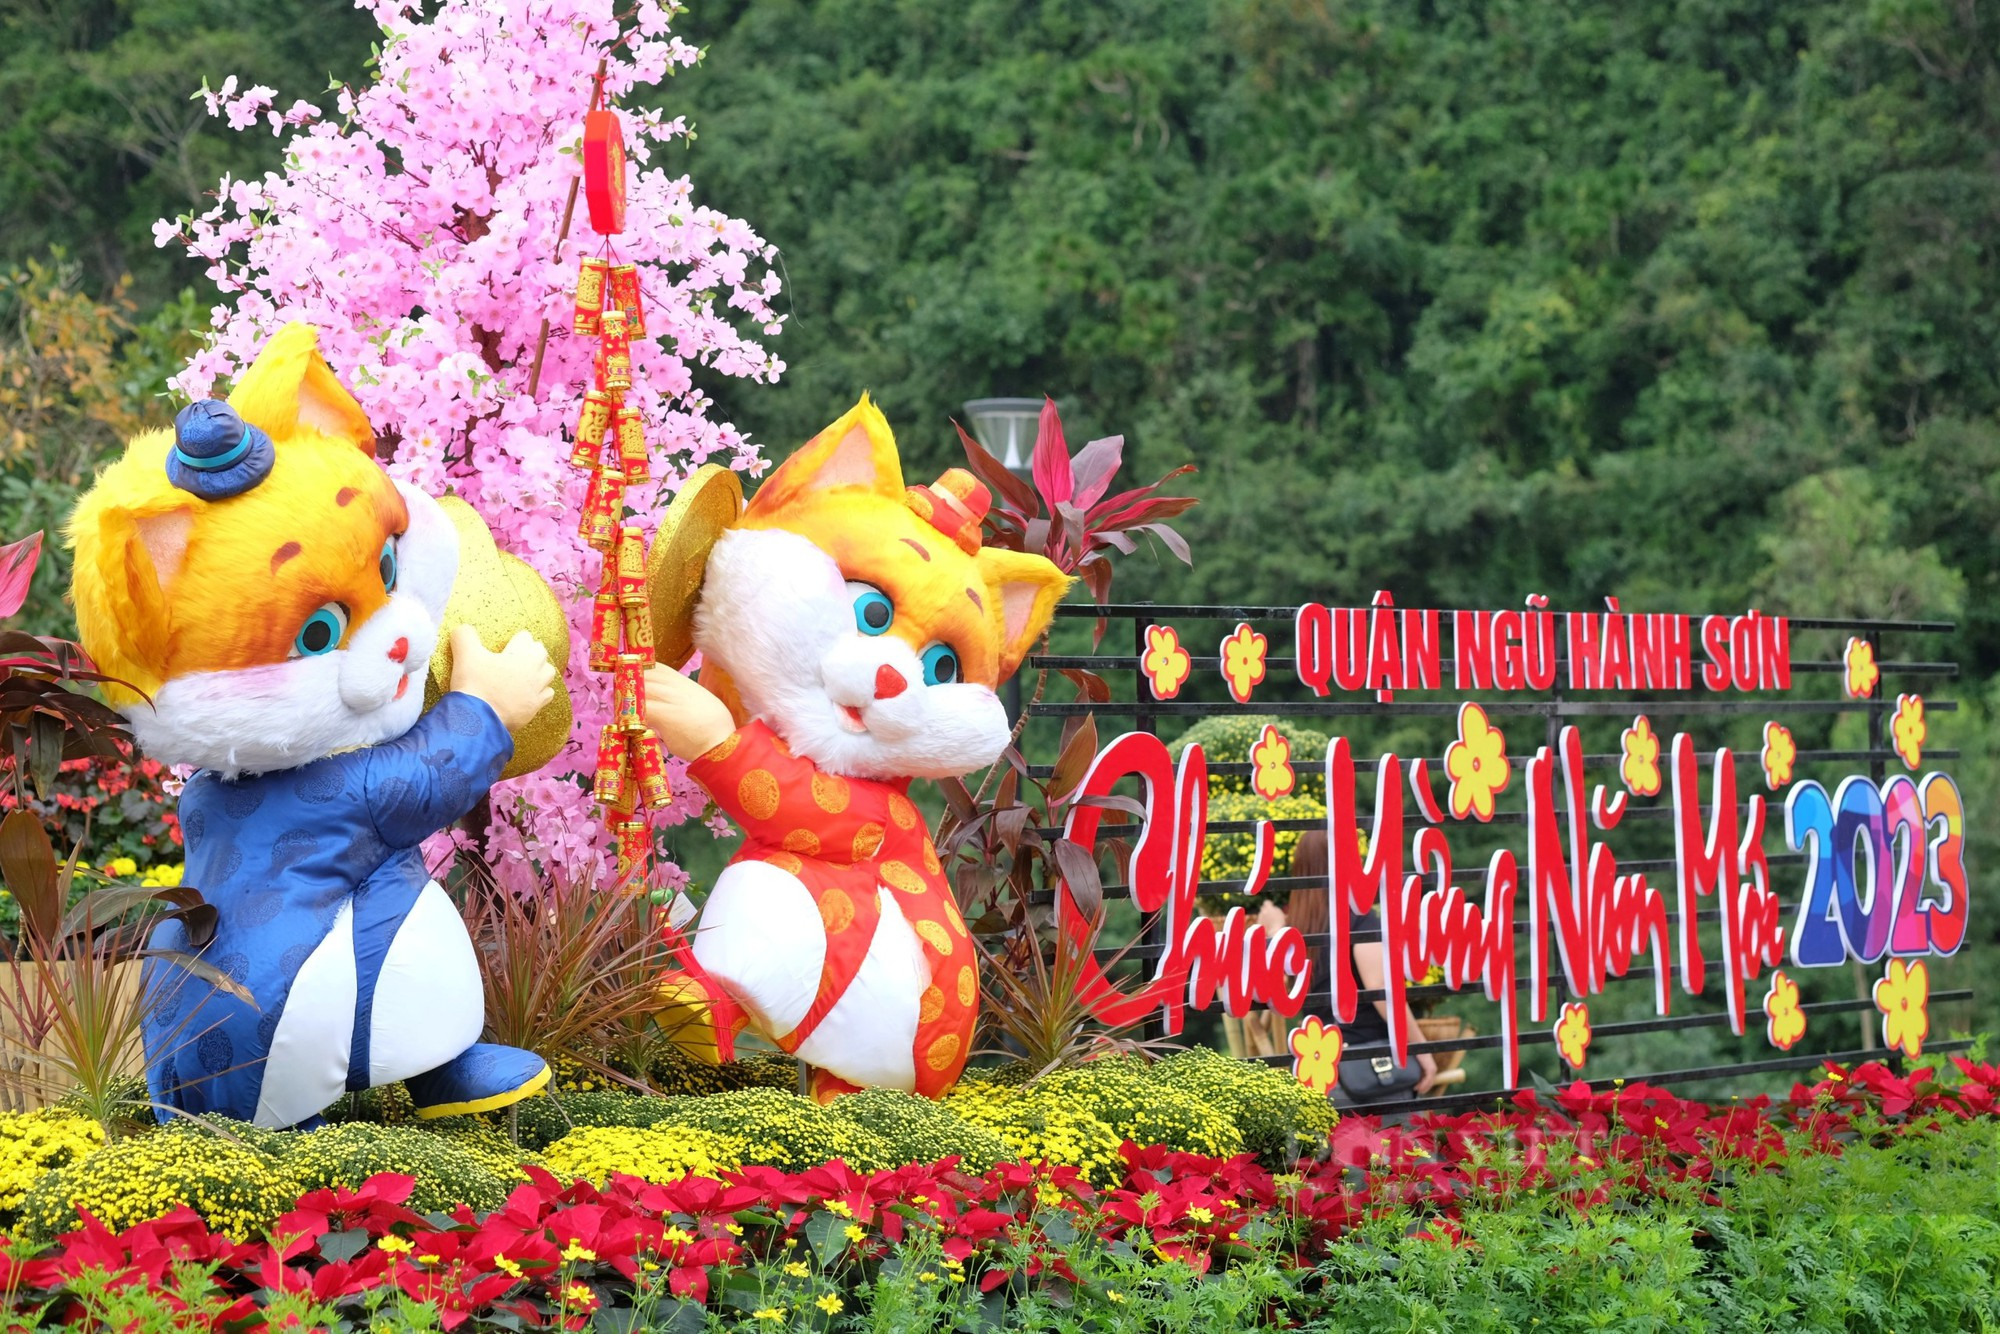 Thích thú check-in vườn hoa dưới chân núi Ngũ Hành Sơn - Ảnh 1.